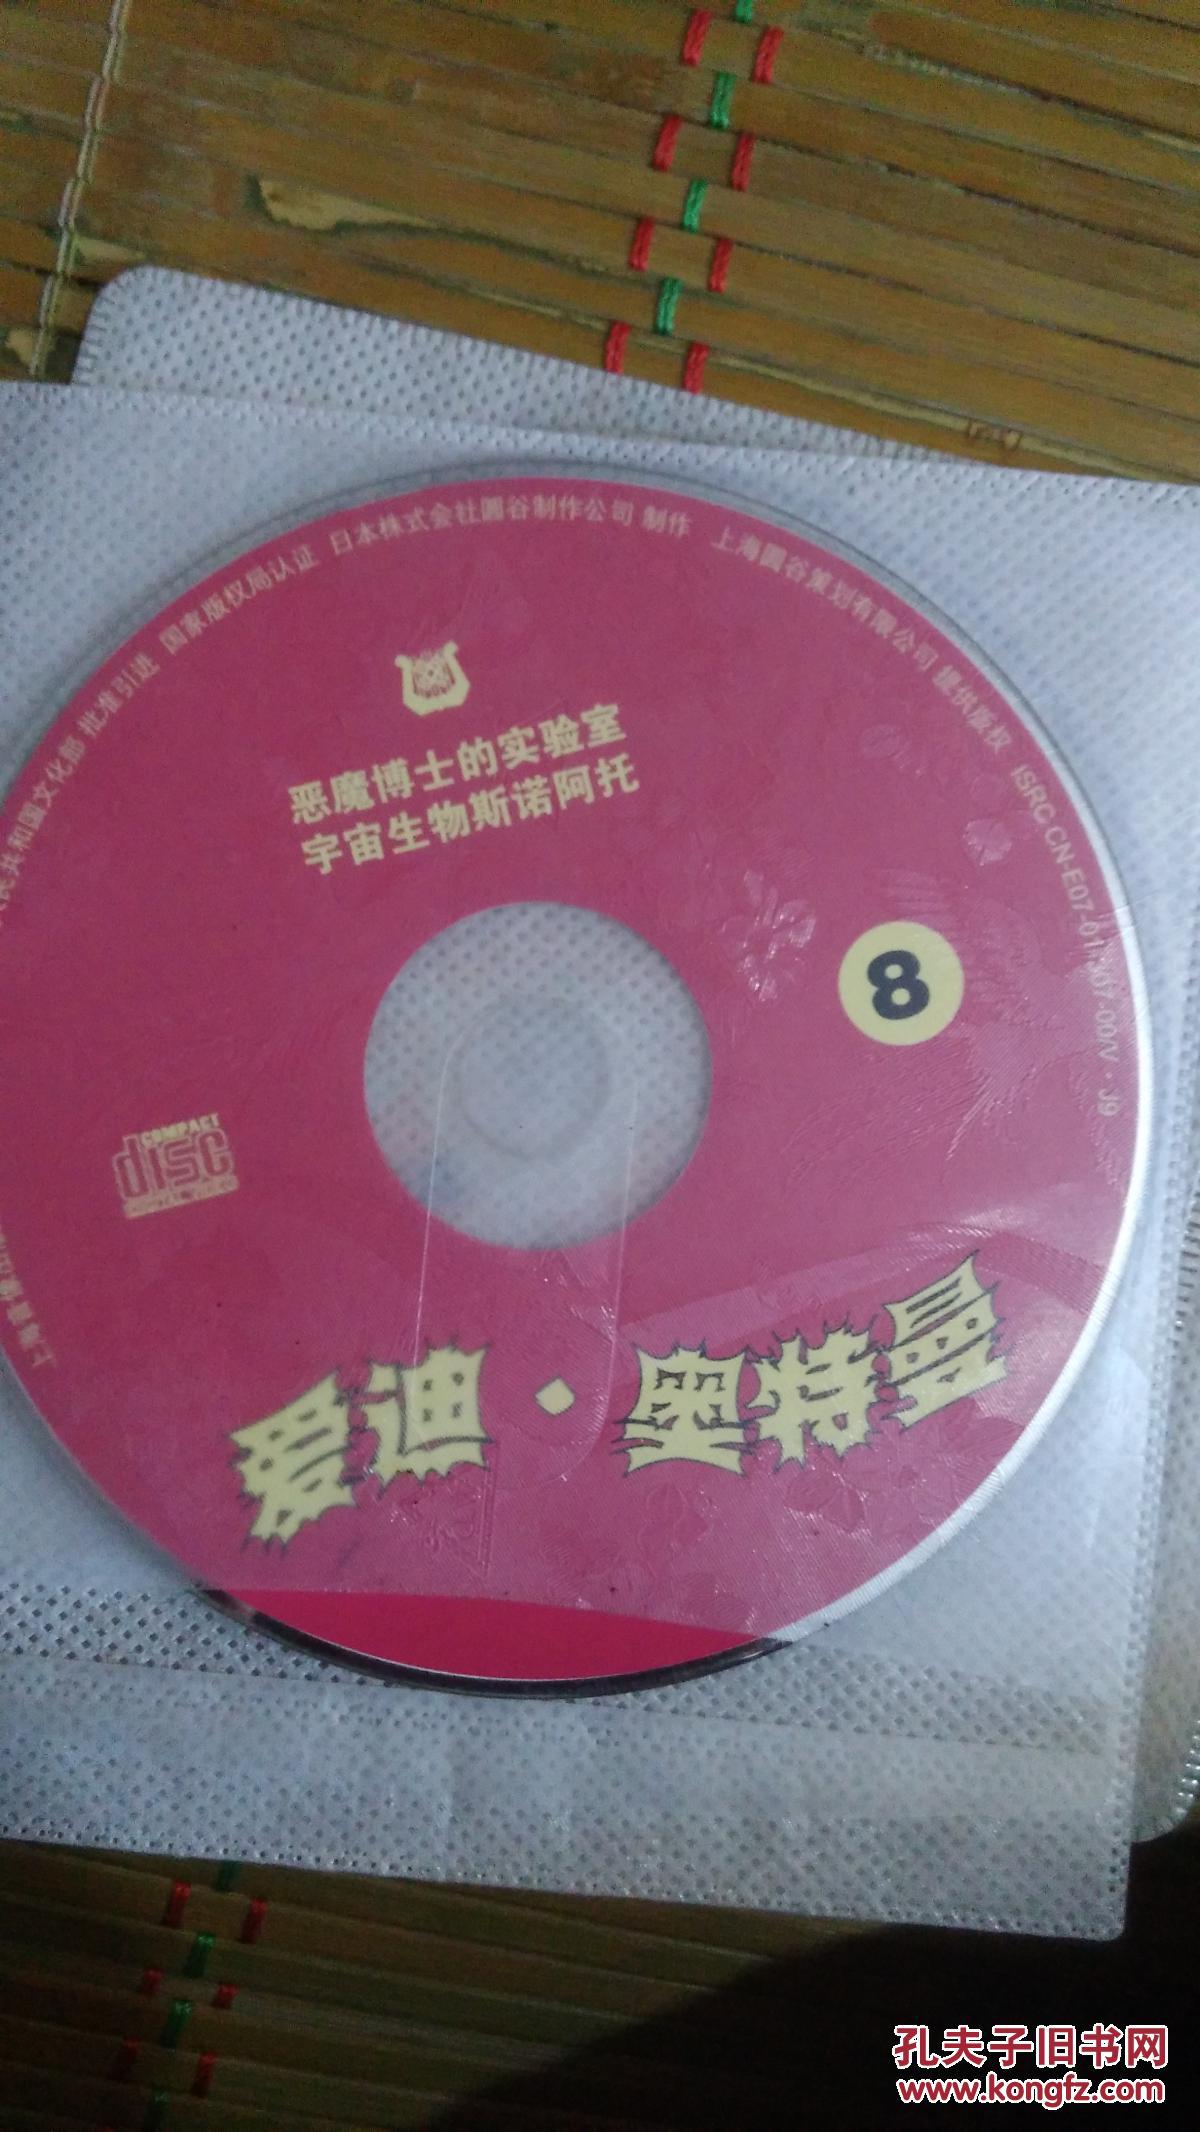 【图】奥特曼动画片系列VCD 爱迪奥特曼6 8 